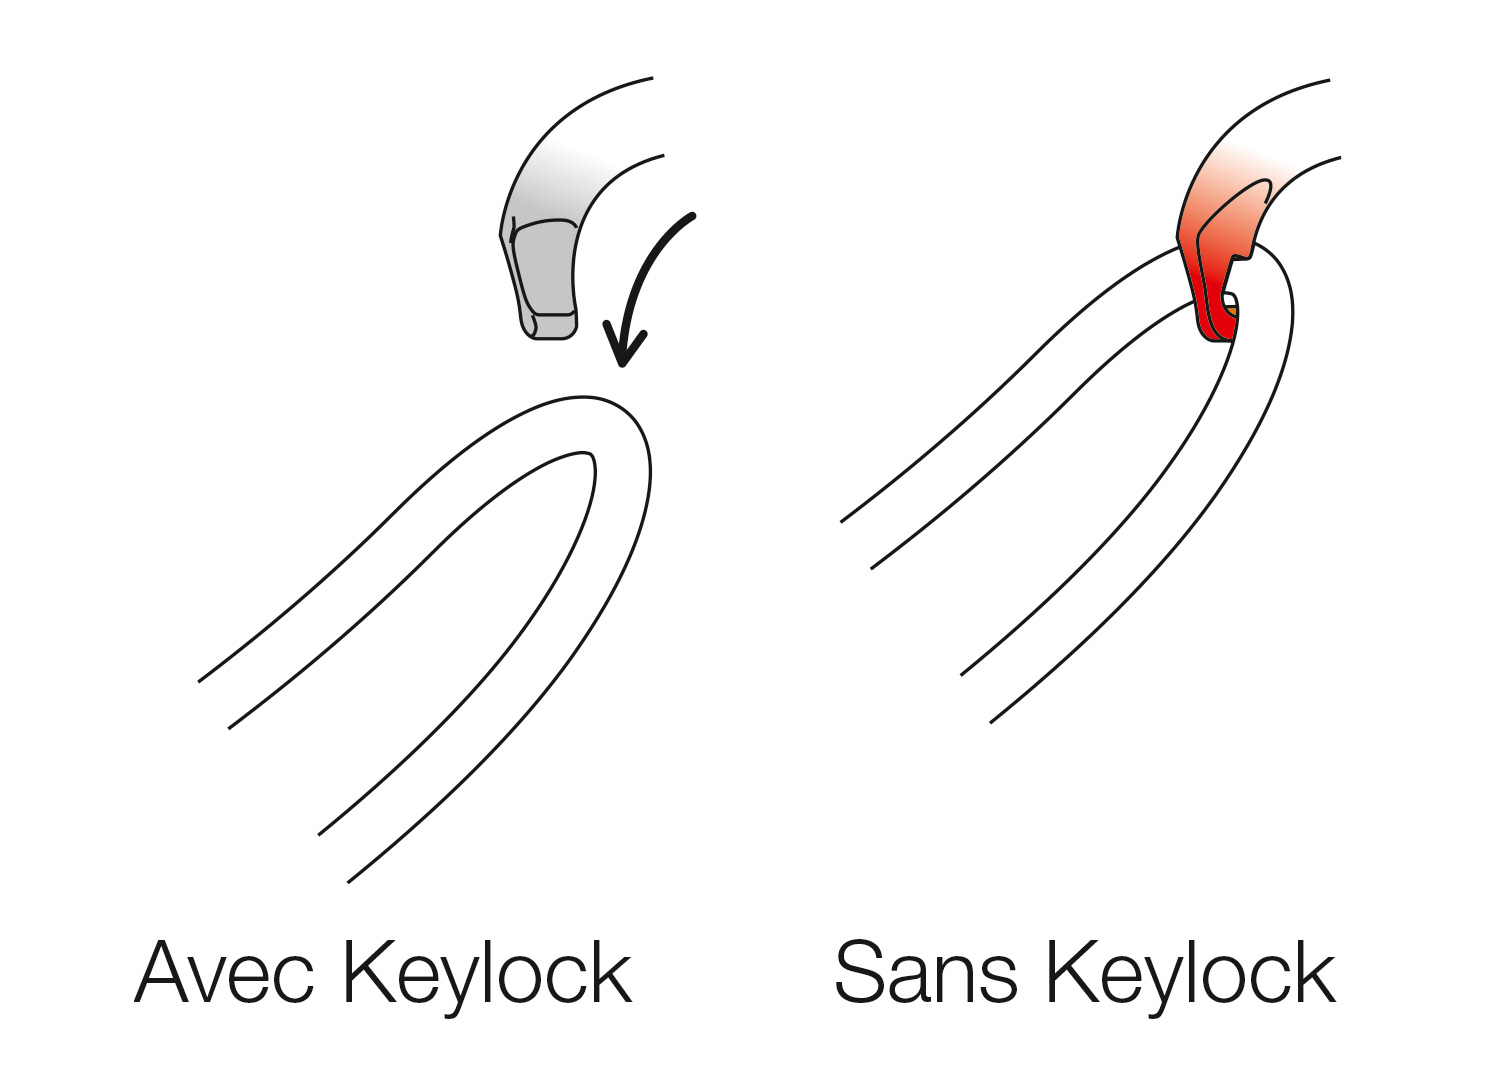 Keylock system